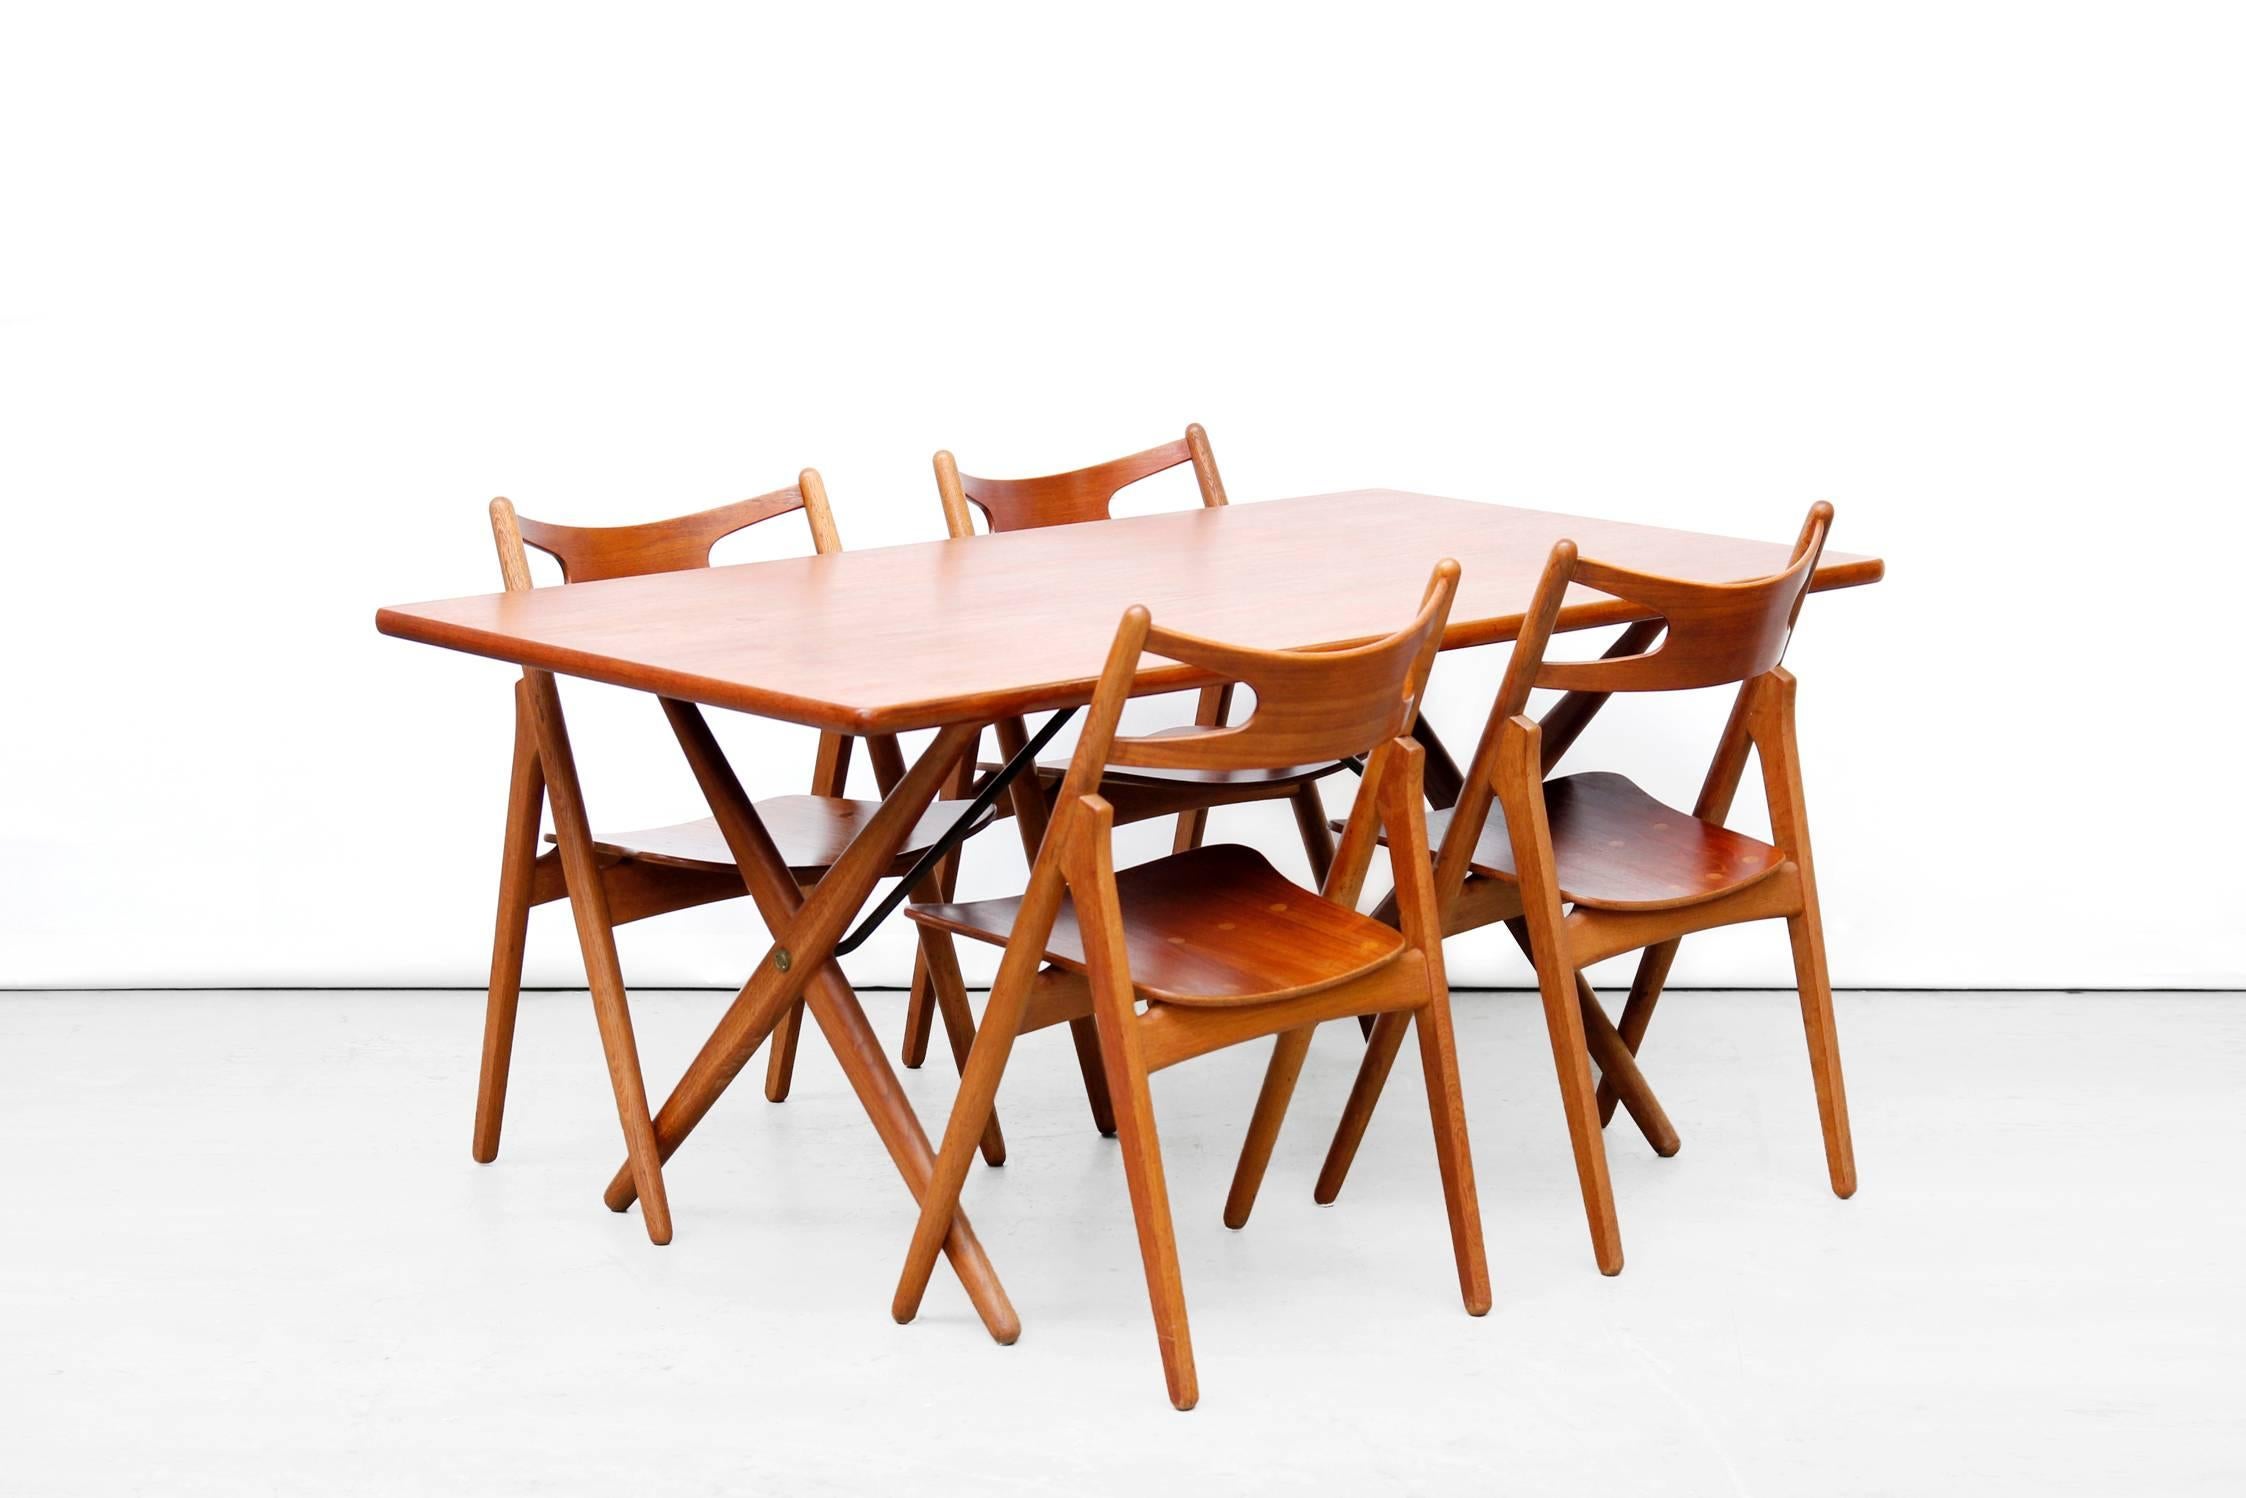 Scandinavian Modern Teak and Oak Cross Leg Dining Table by Hans Wegner for Andreas Tuck Model AT 303